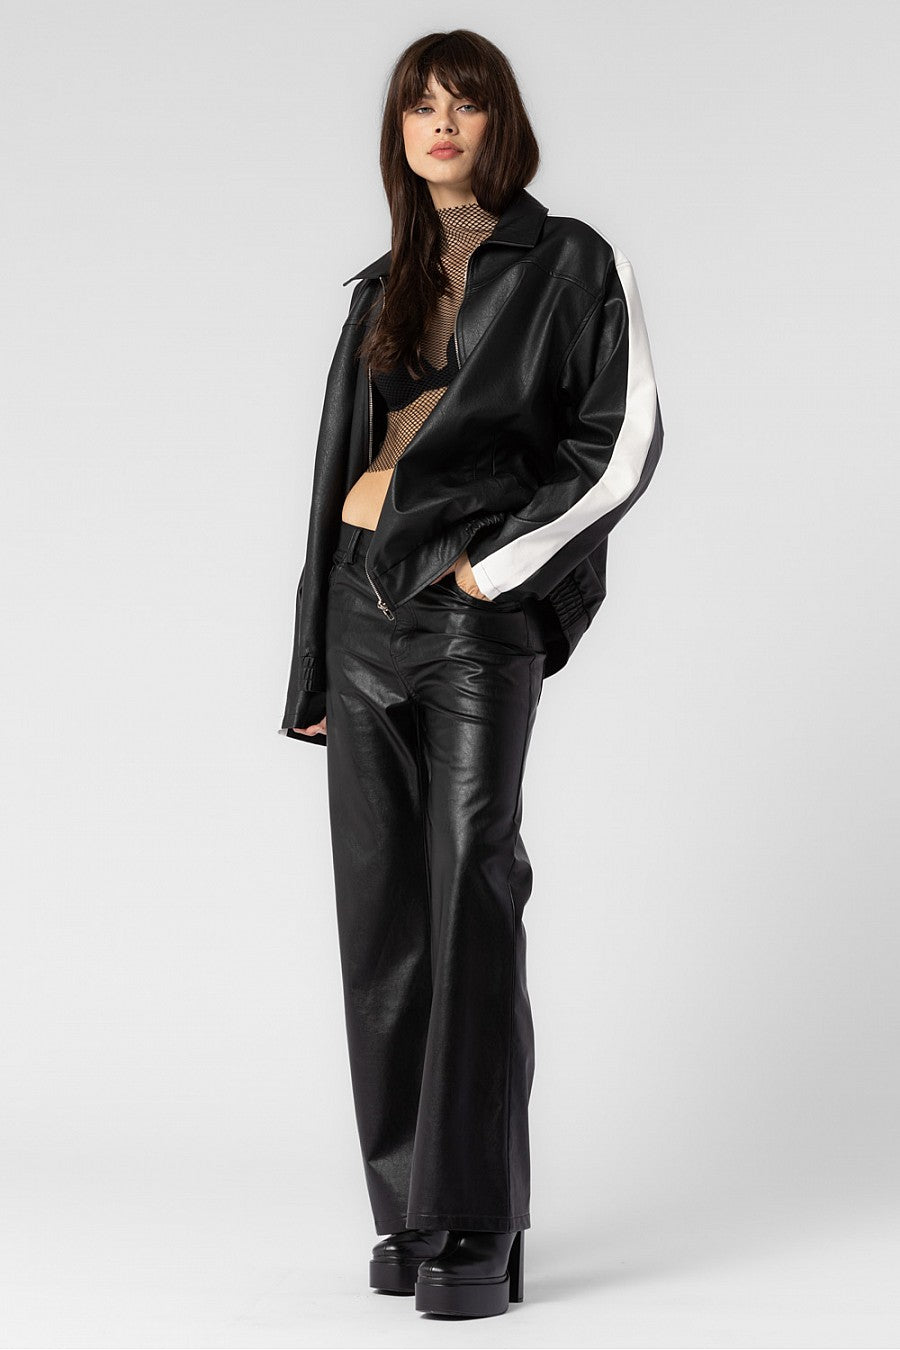 Women Fashion 90s Leather Jacket Vintage Leather Oversized Leather Bomber  Jacket | eBay